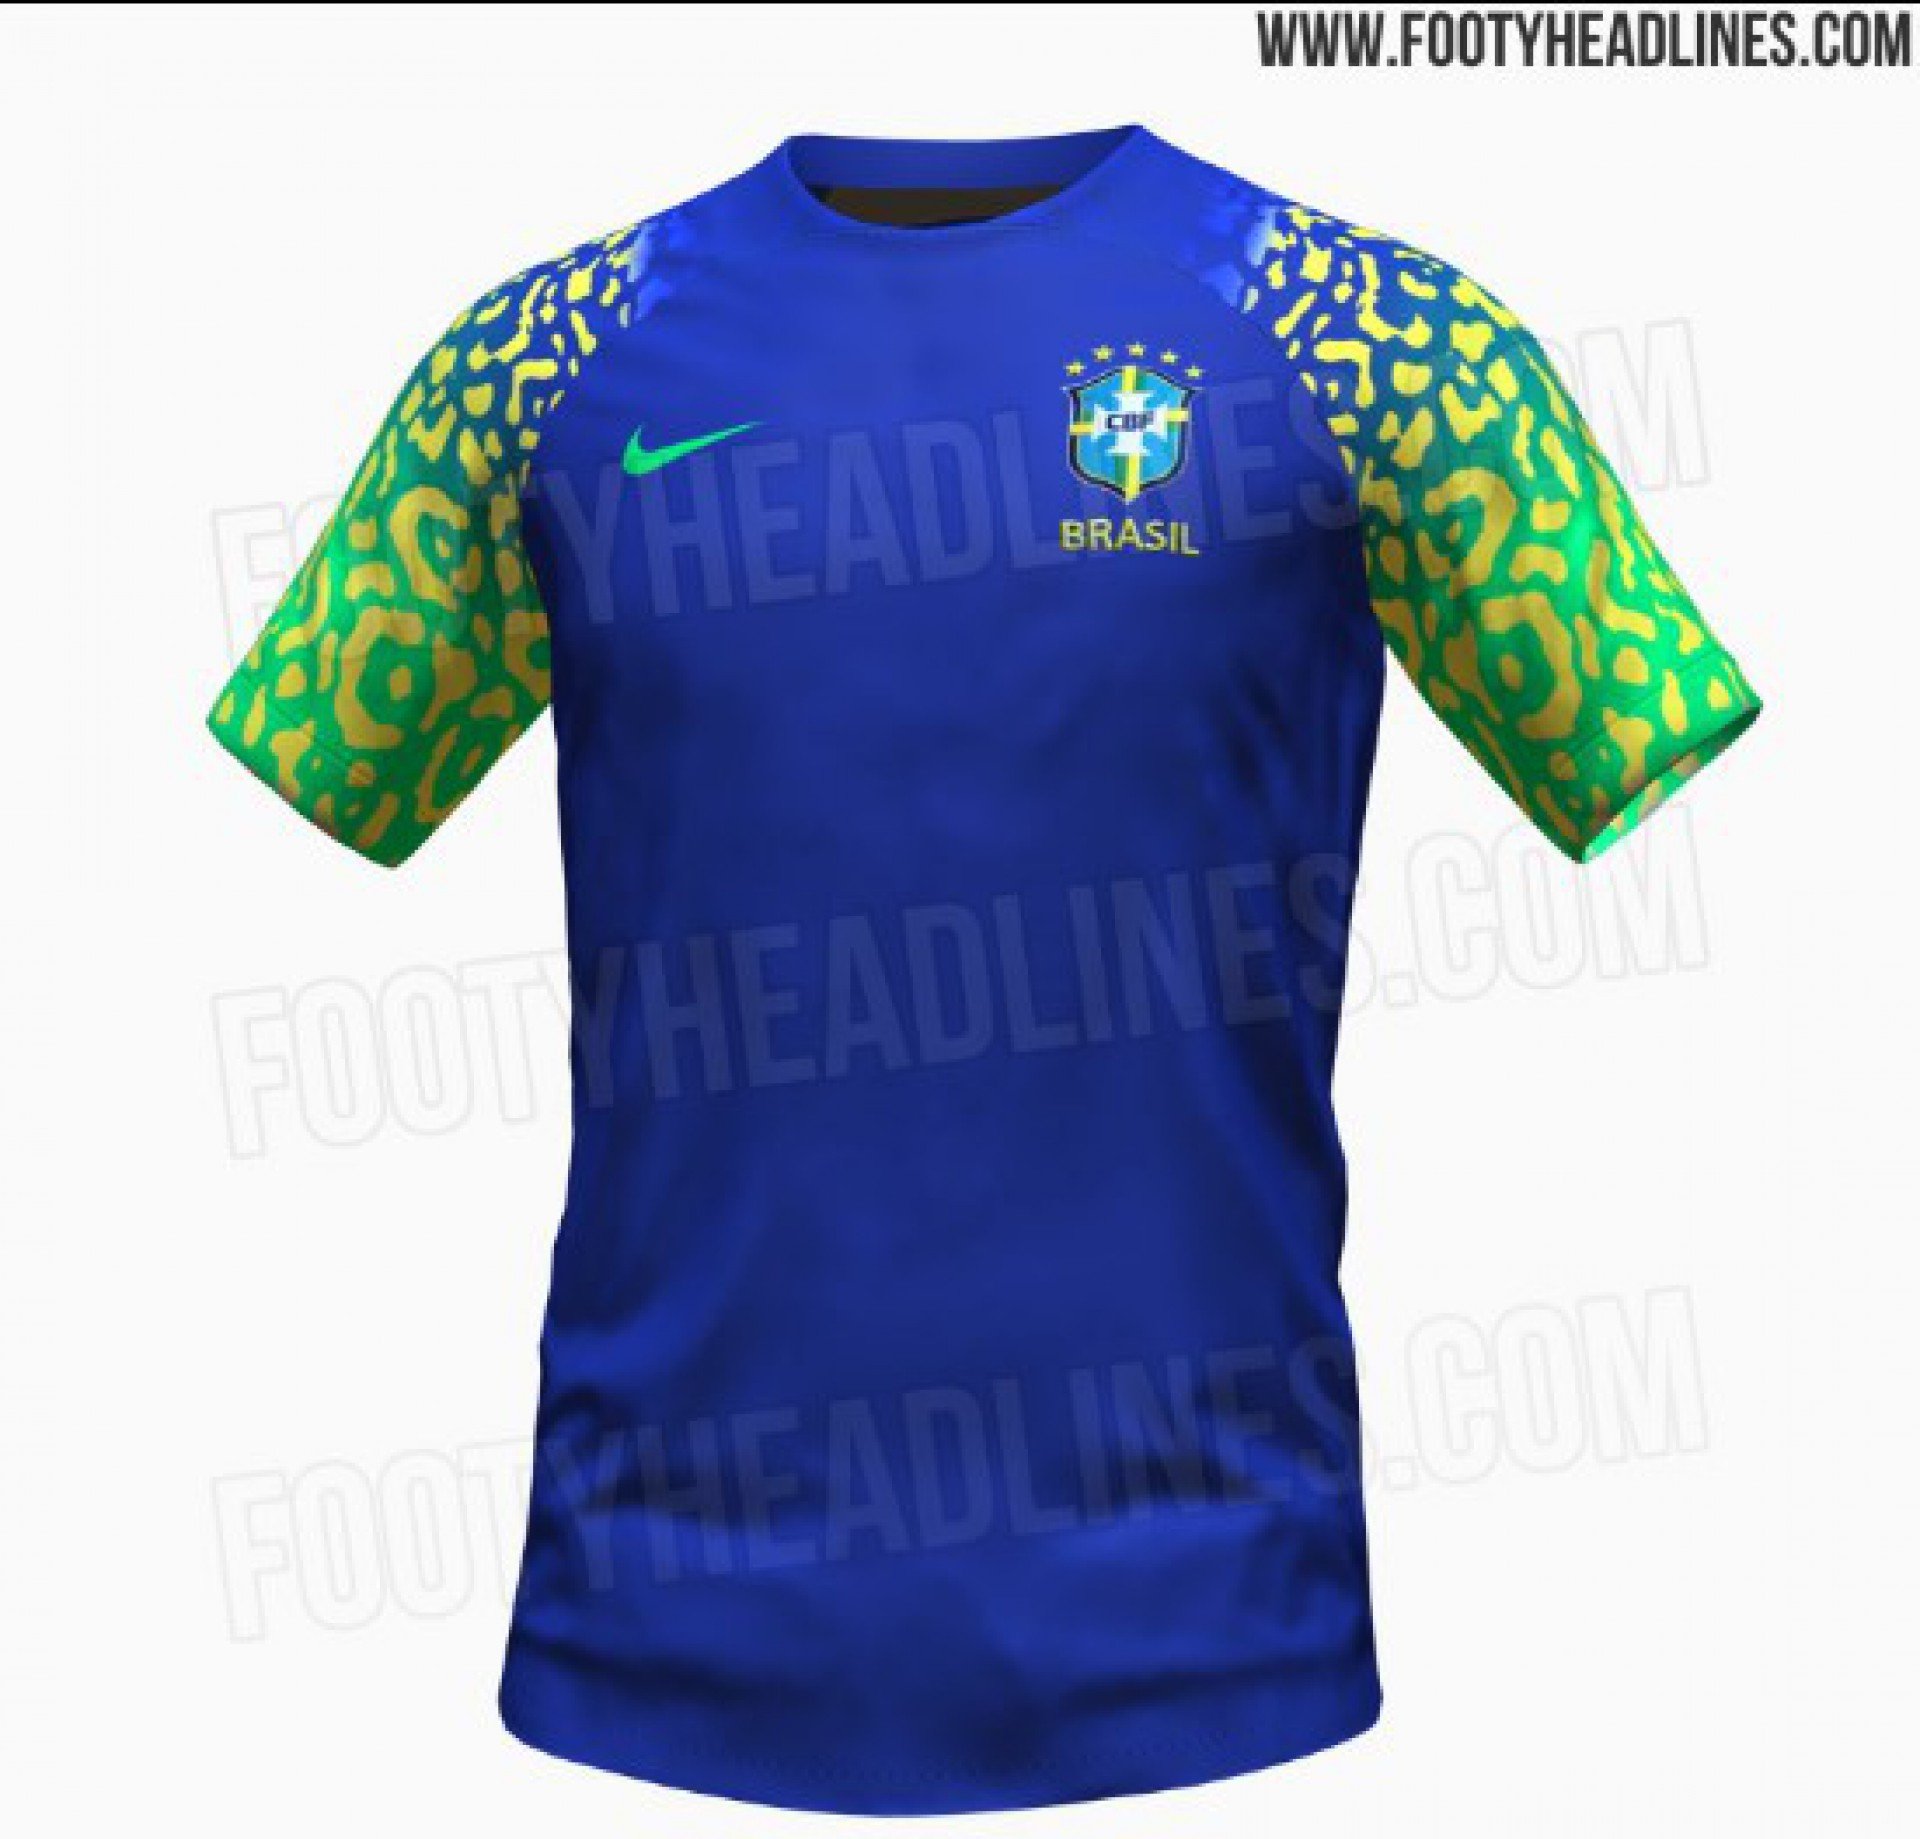 Site divulga detalhes do segundo uniforme da Seleção Brasileira para a Copa  do Mundo; confira as imagens, Esporte